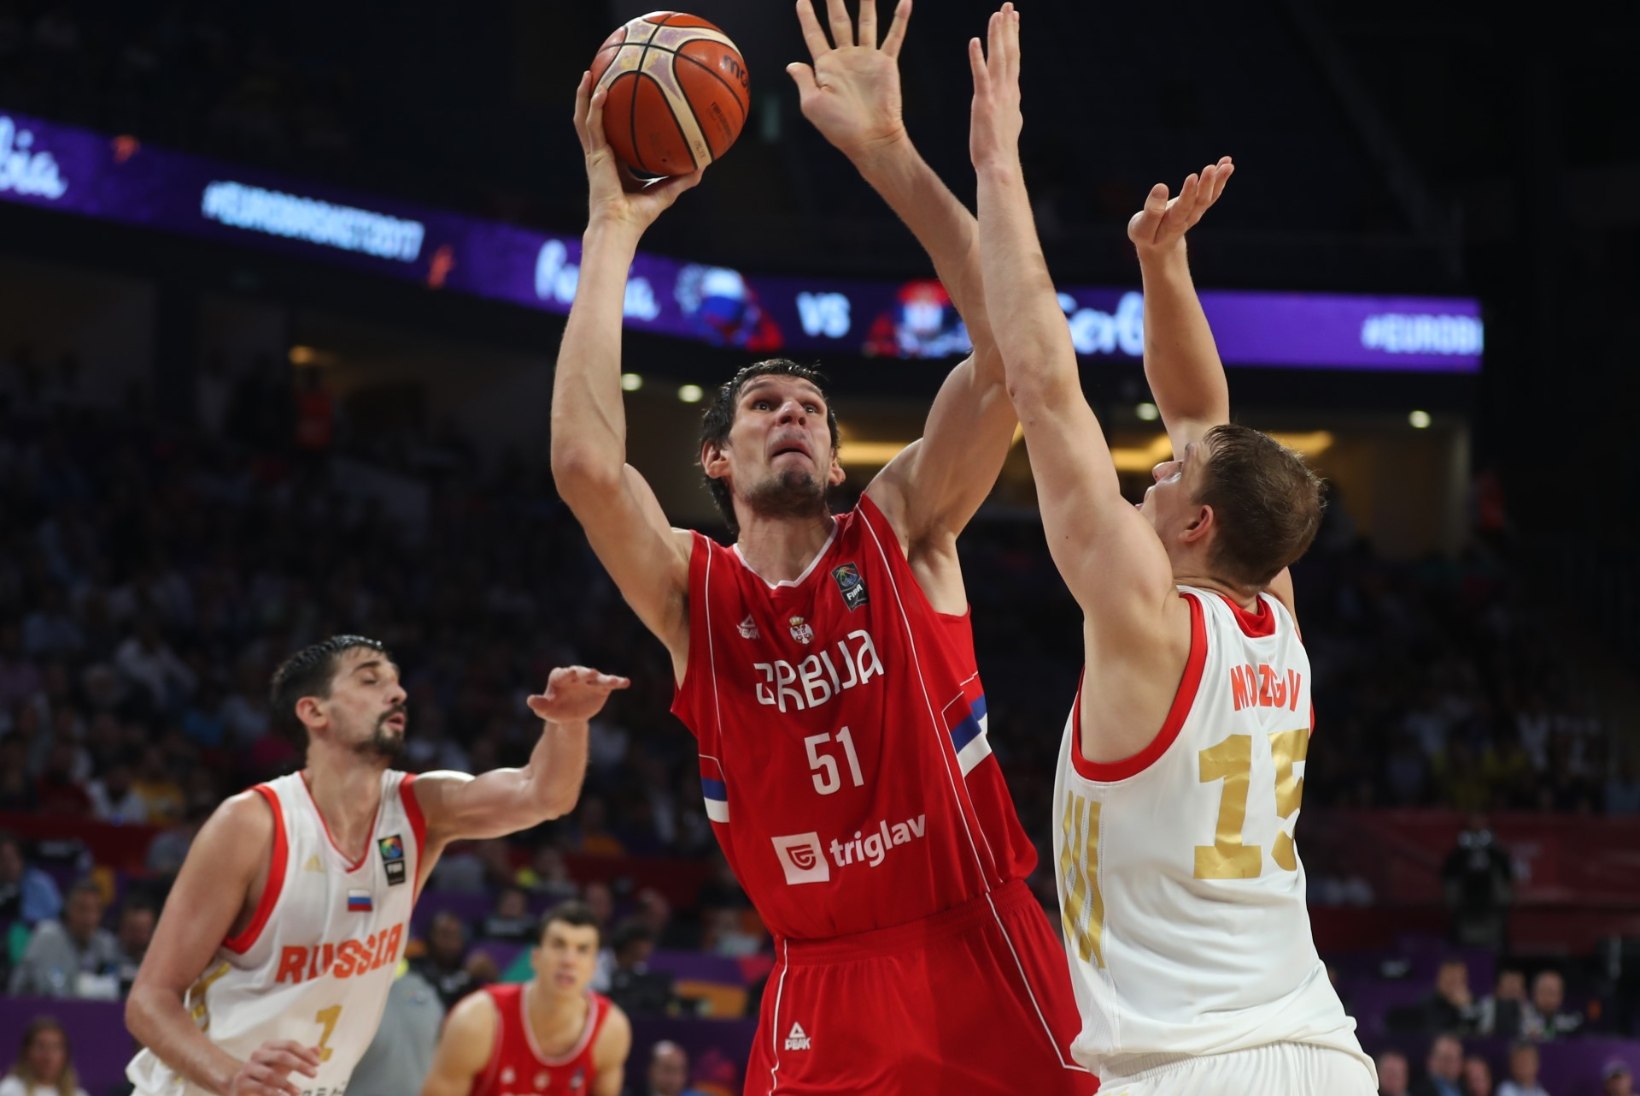 NII SEE JUHTUS | Sport 15.09: Serbia murdis kaheksa-aastase vahe järel korvpalli EMi finaali